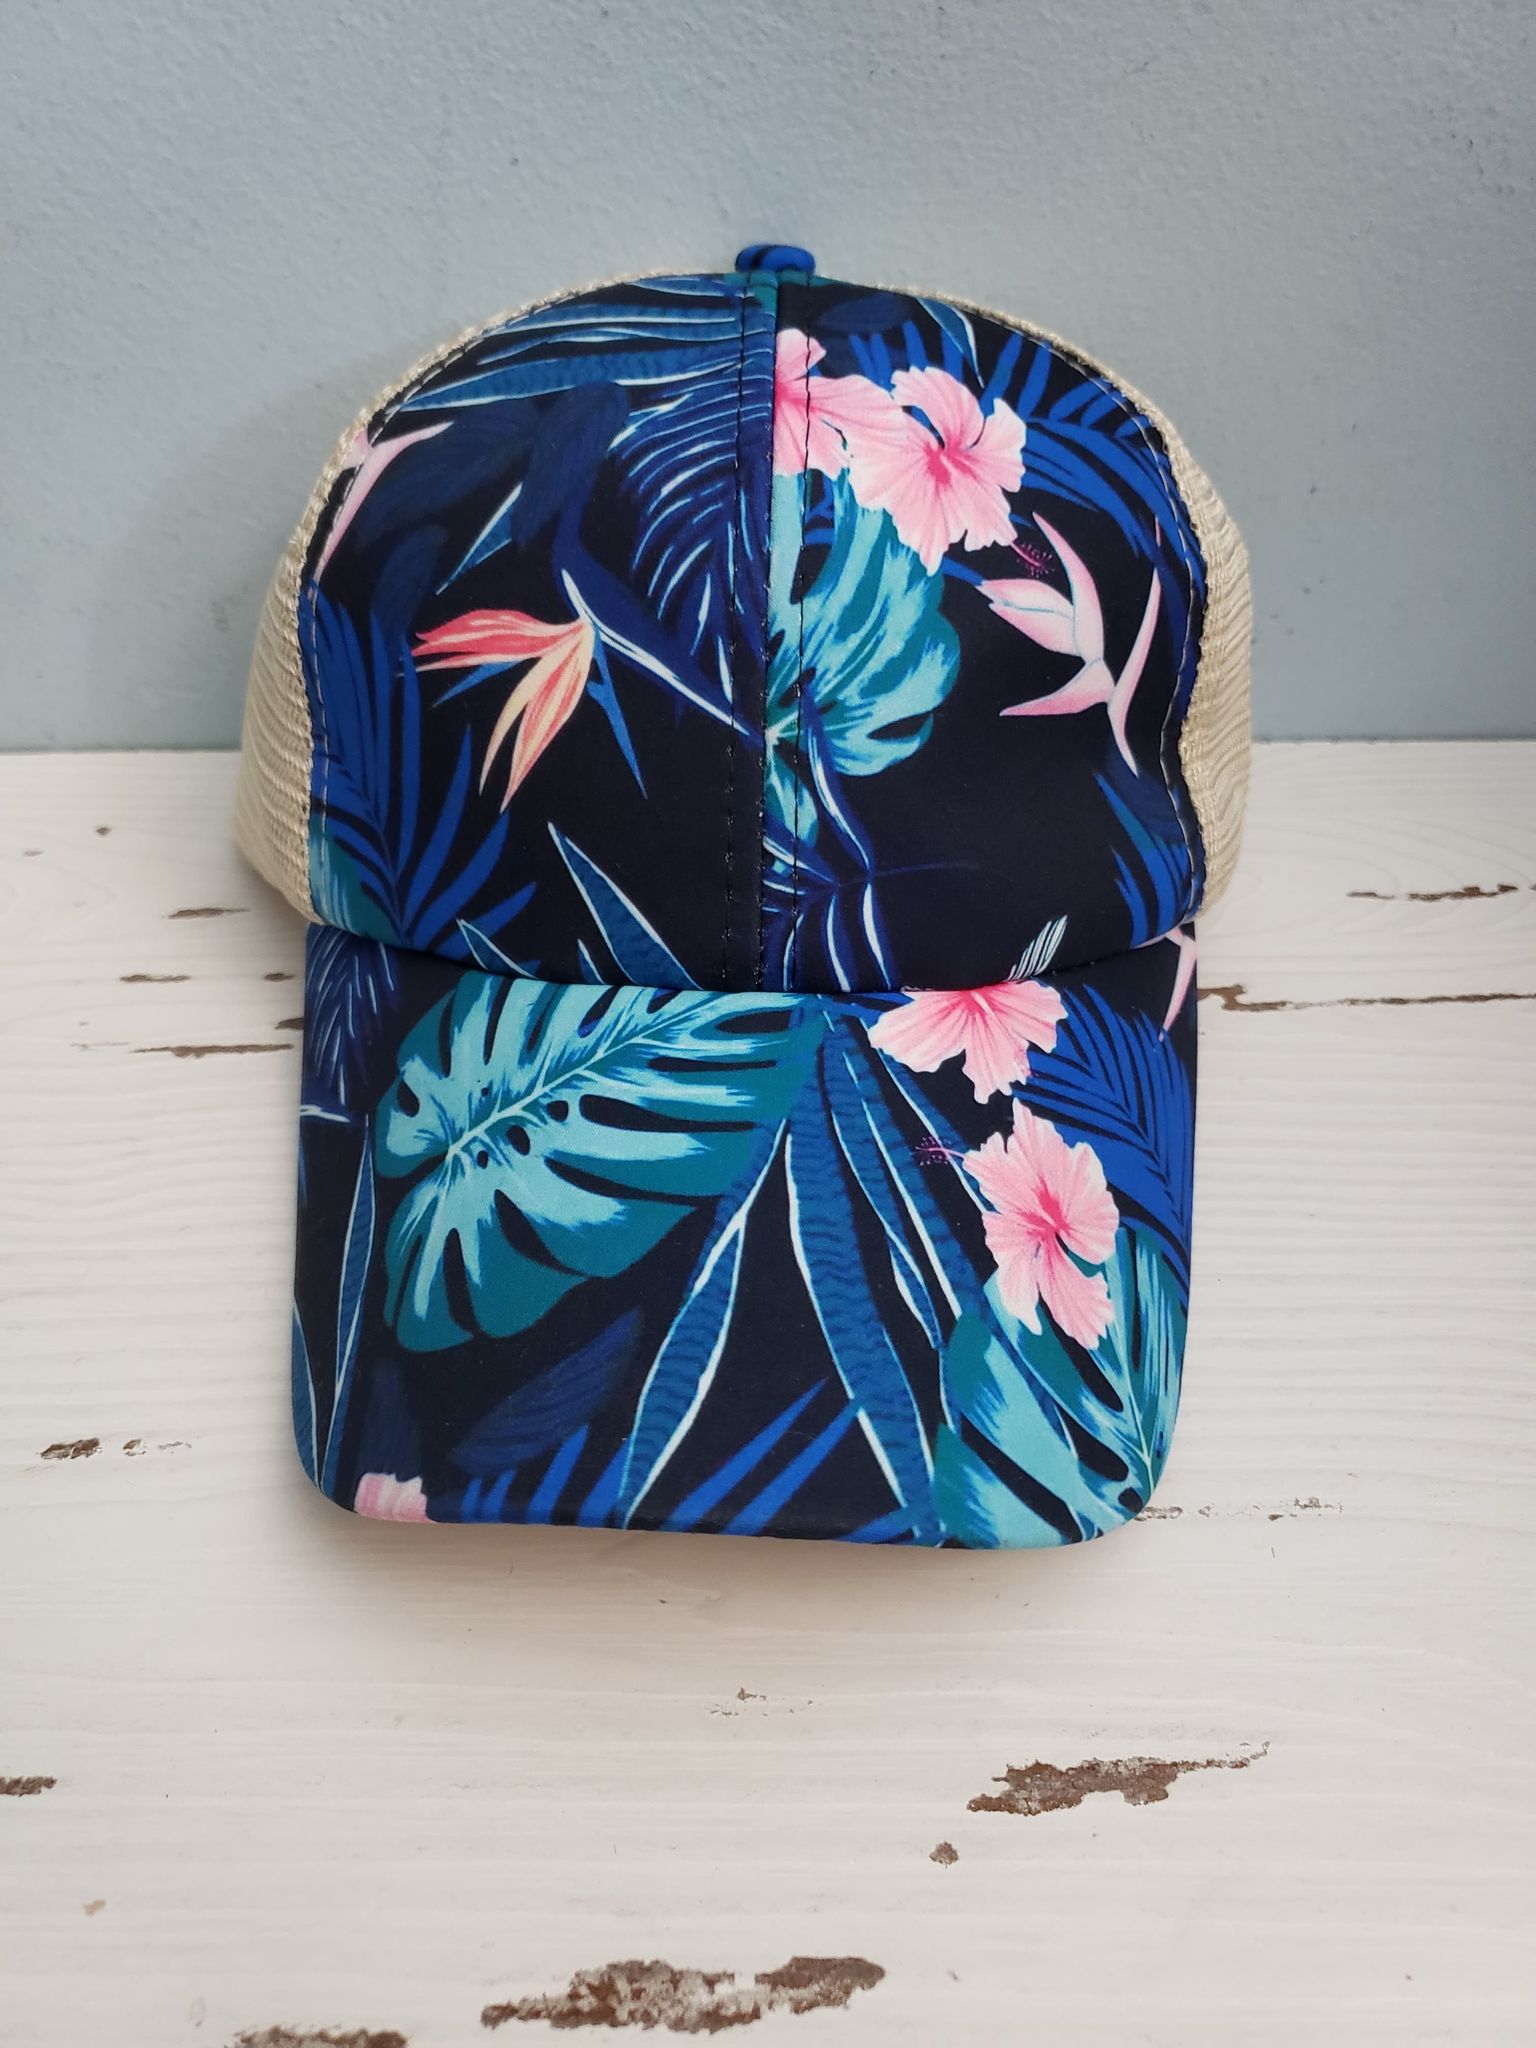 Blue floral criss cross ponytail hat